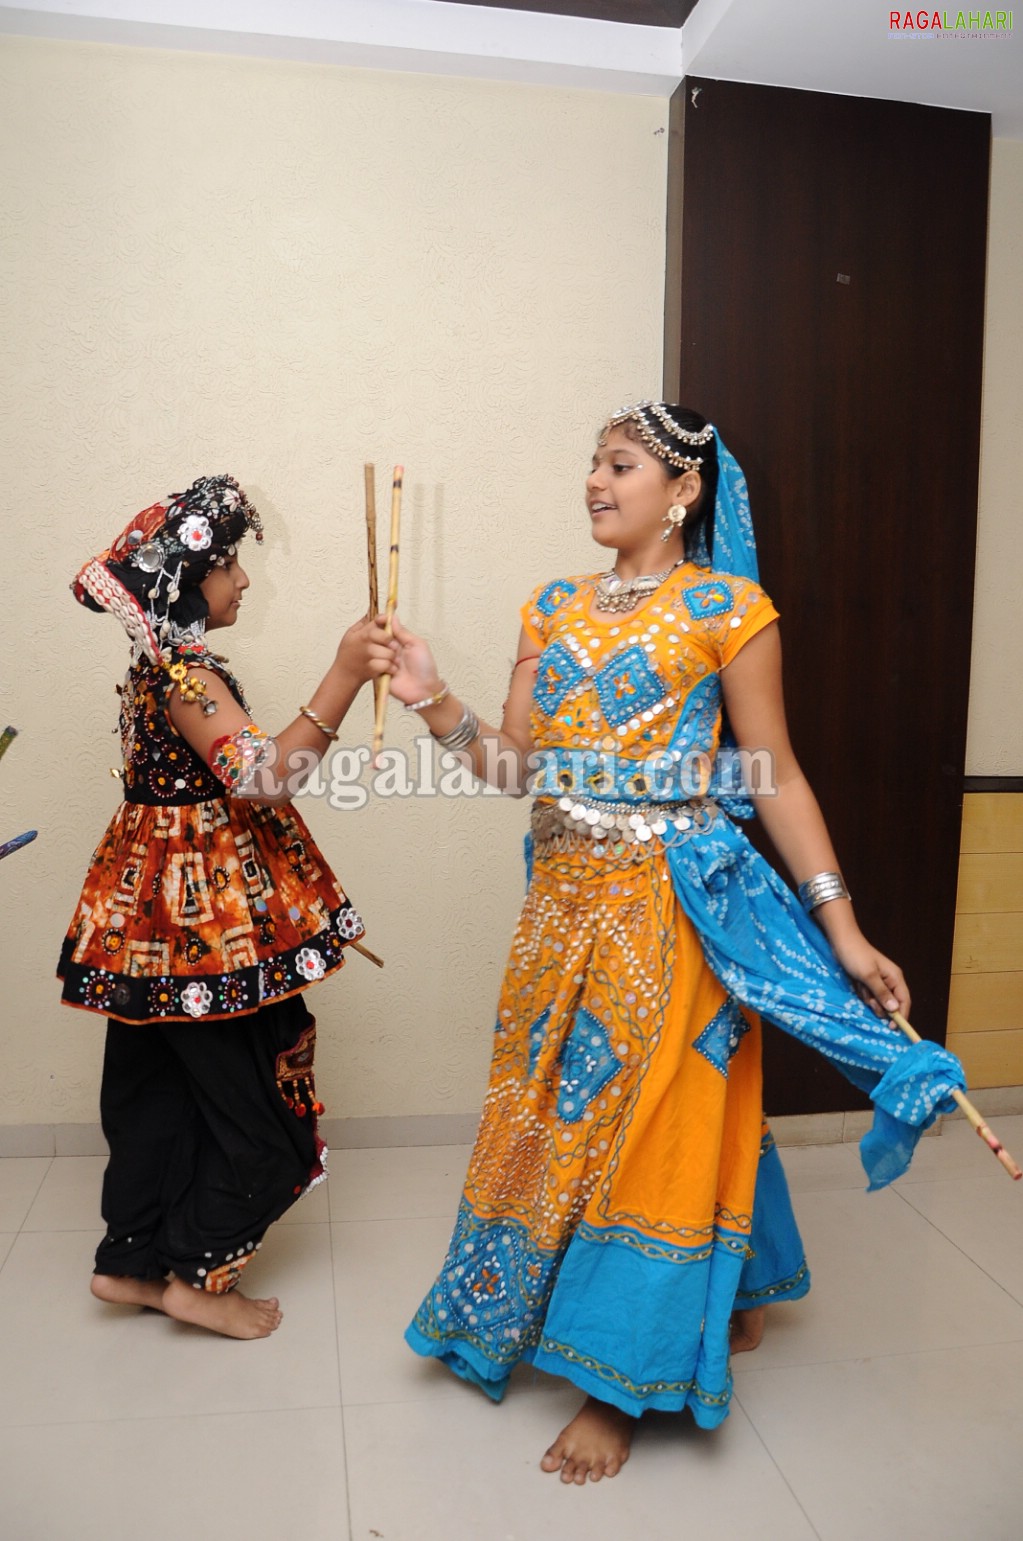 Dandiya Celebrations @ Hotel Parklane, Hyd